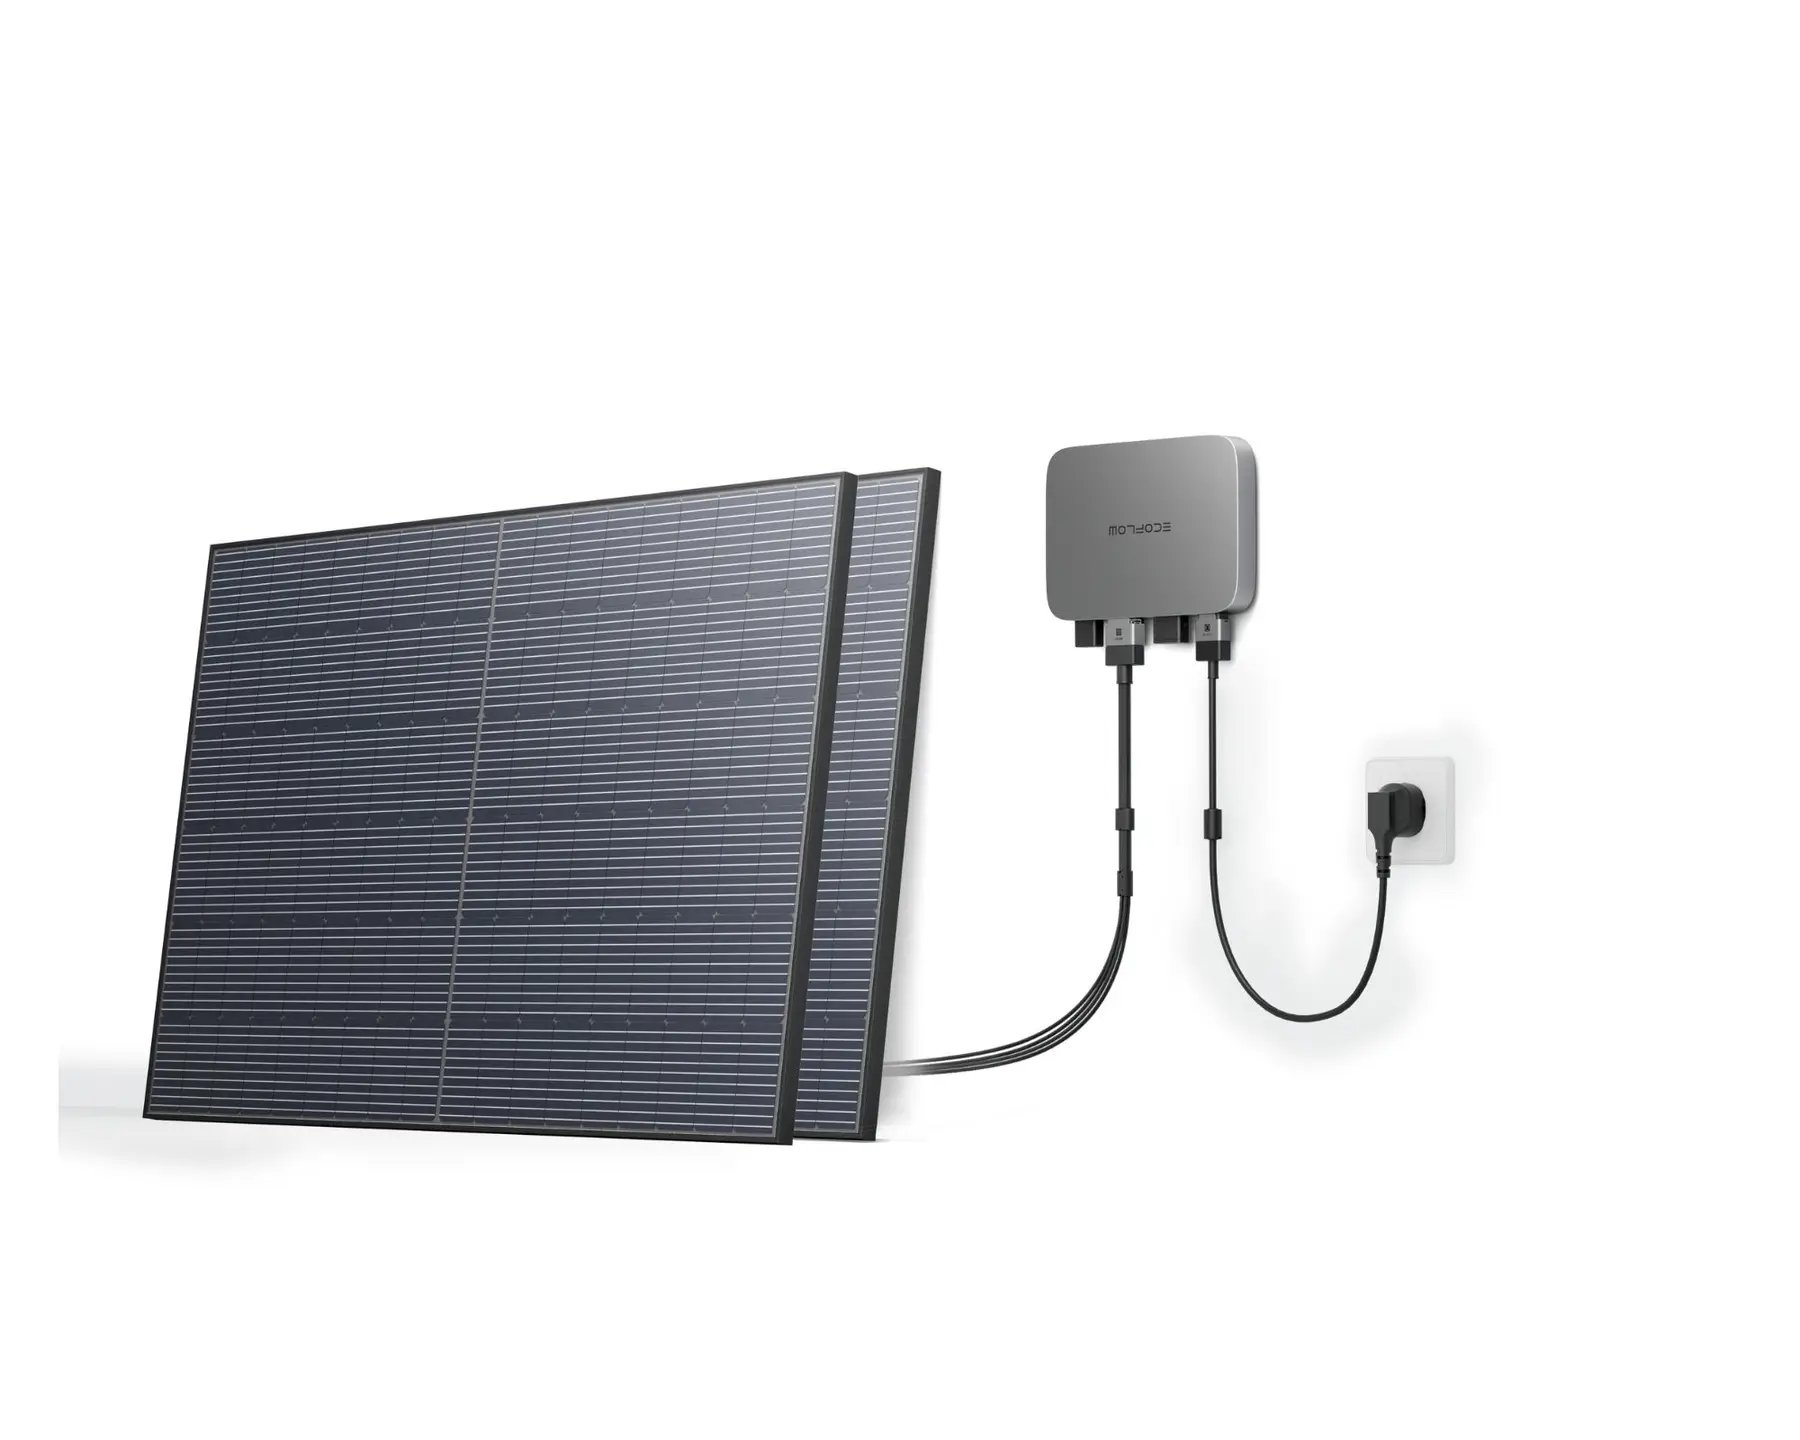 Комплект энегонезависимости EcoFlow PowerStream - микроинвертор 600W + 2 x 400W стационарные солнечные панели